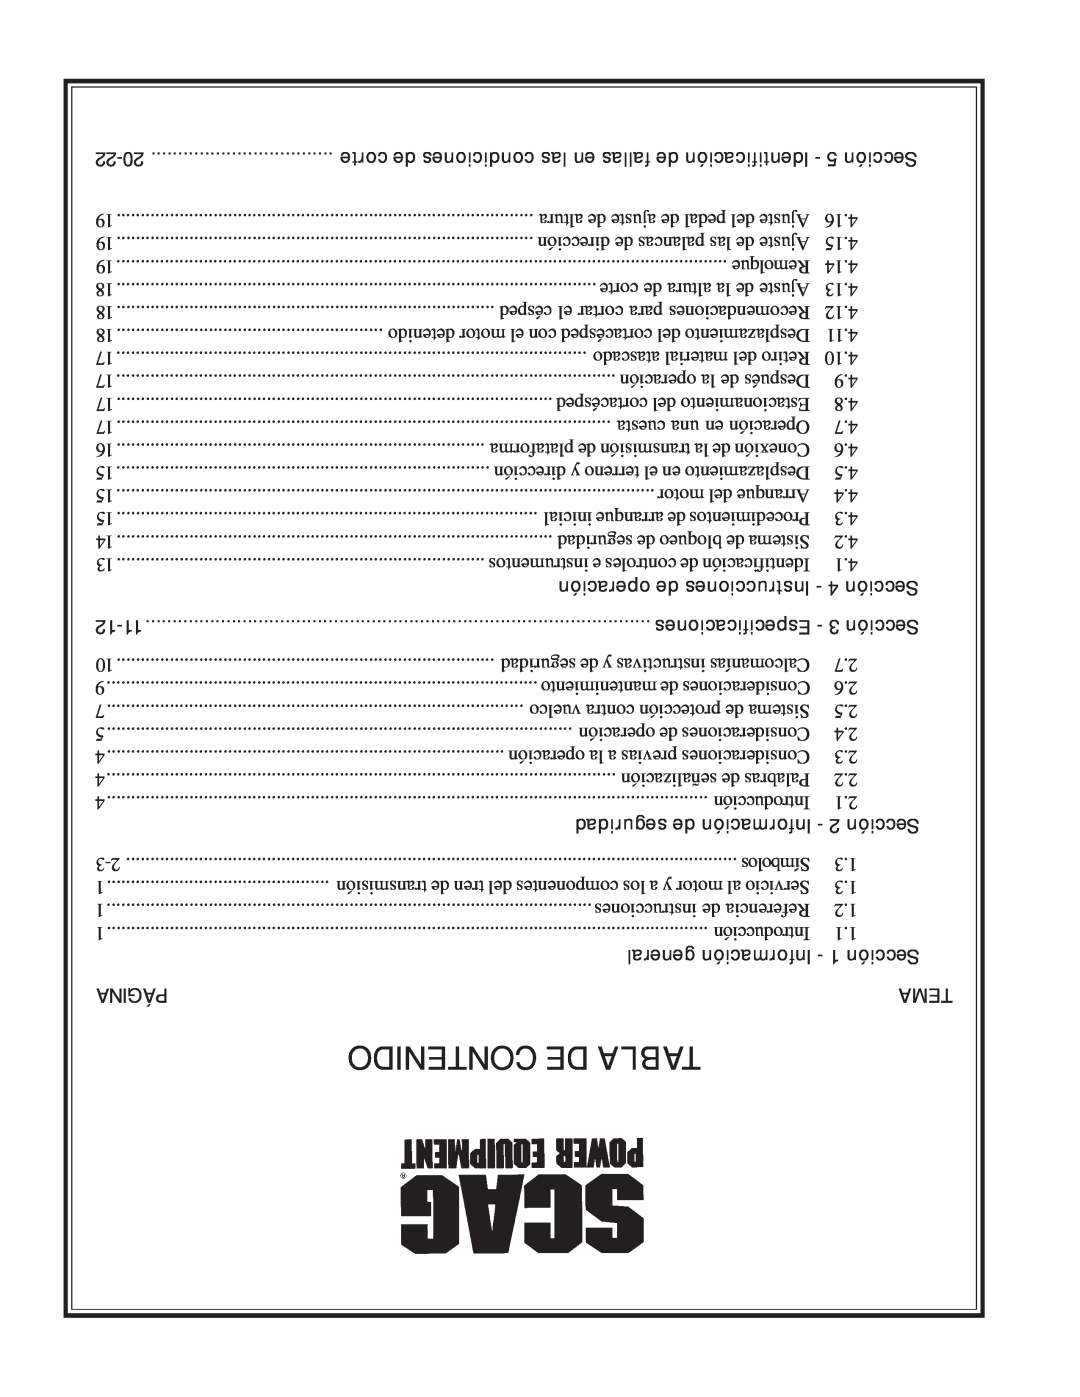 Scag Power Equipment STT61V-31EFI-SS manual Contenido De Tabla, operación de Instrucciones - 4 Sección, 12-11, Página, Tema 